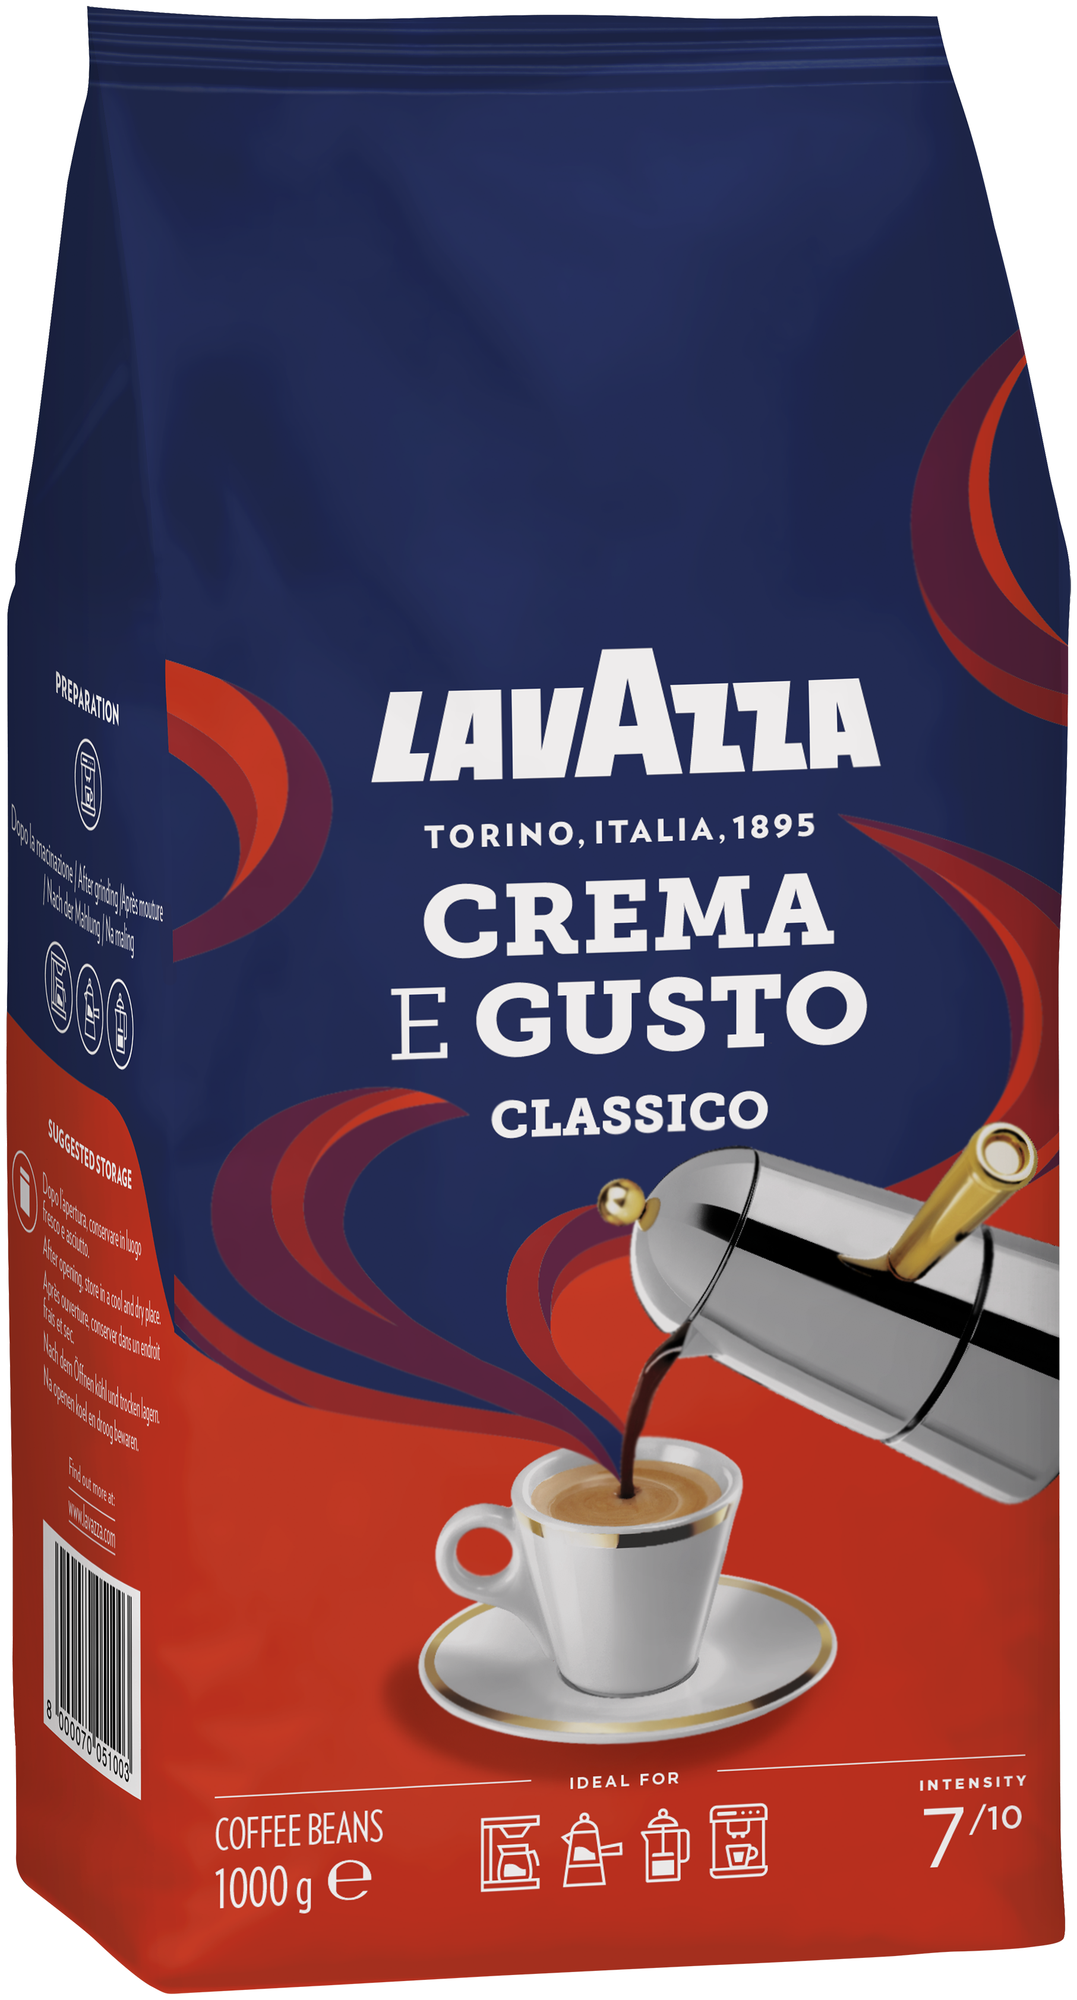 "LavAzza"-Итальянское кофе,1 кг.